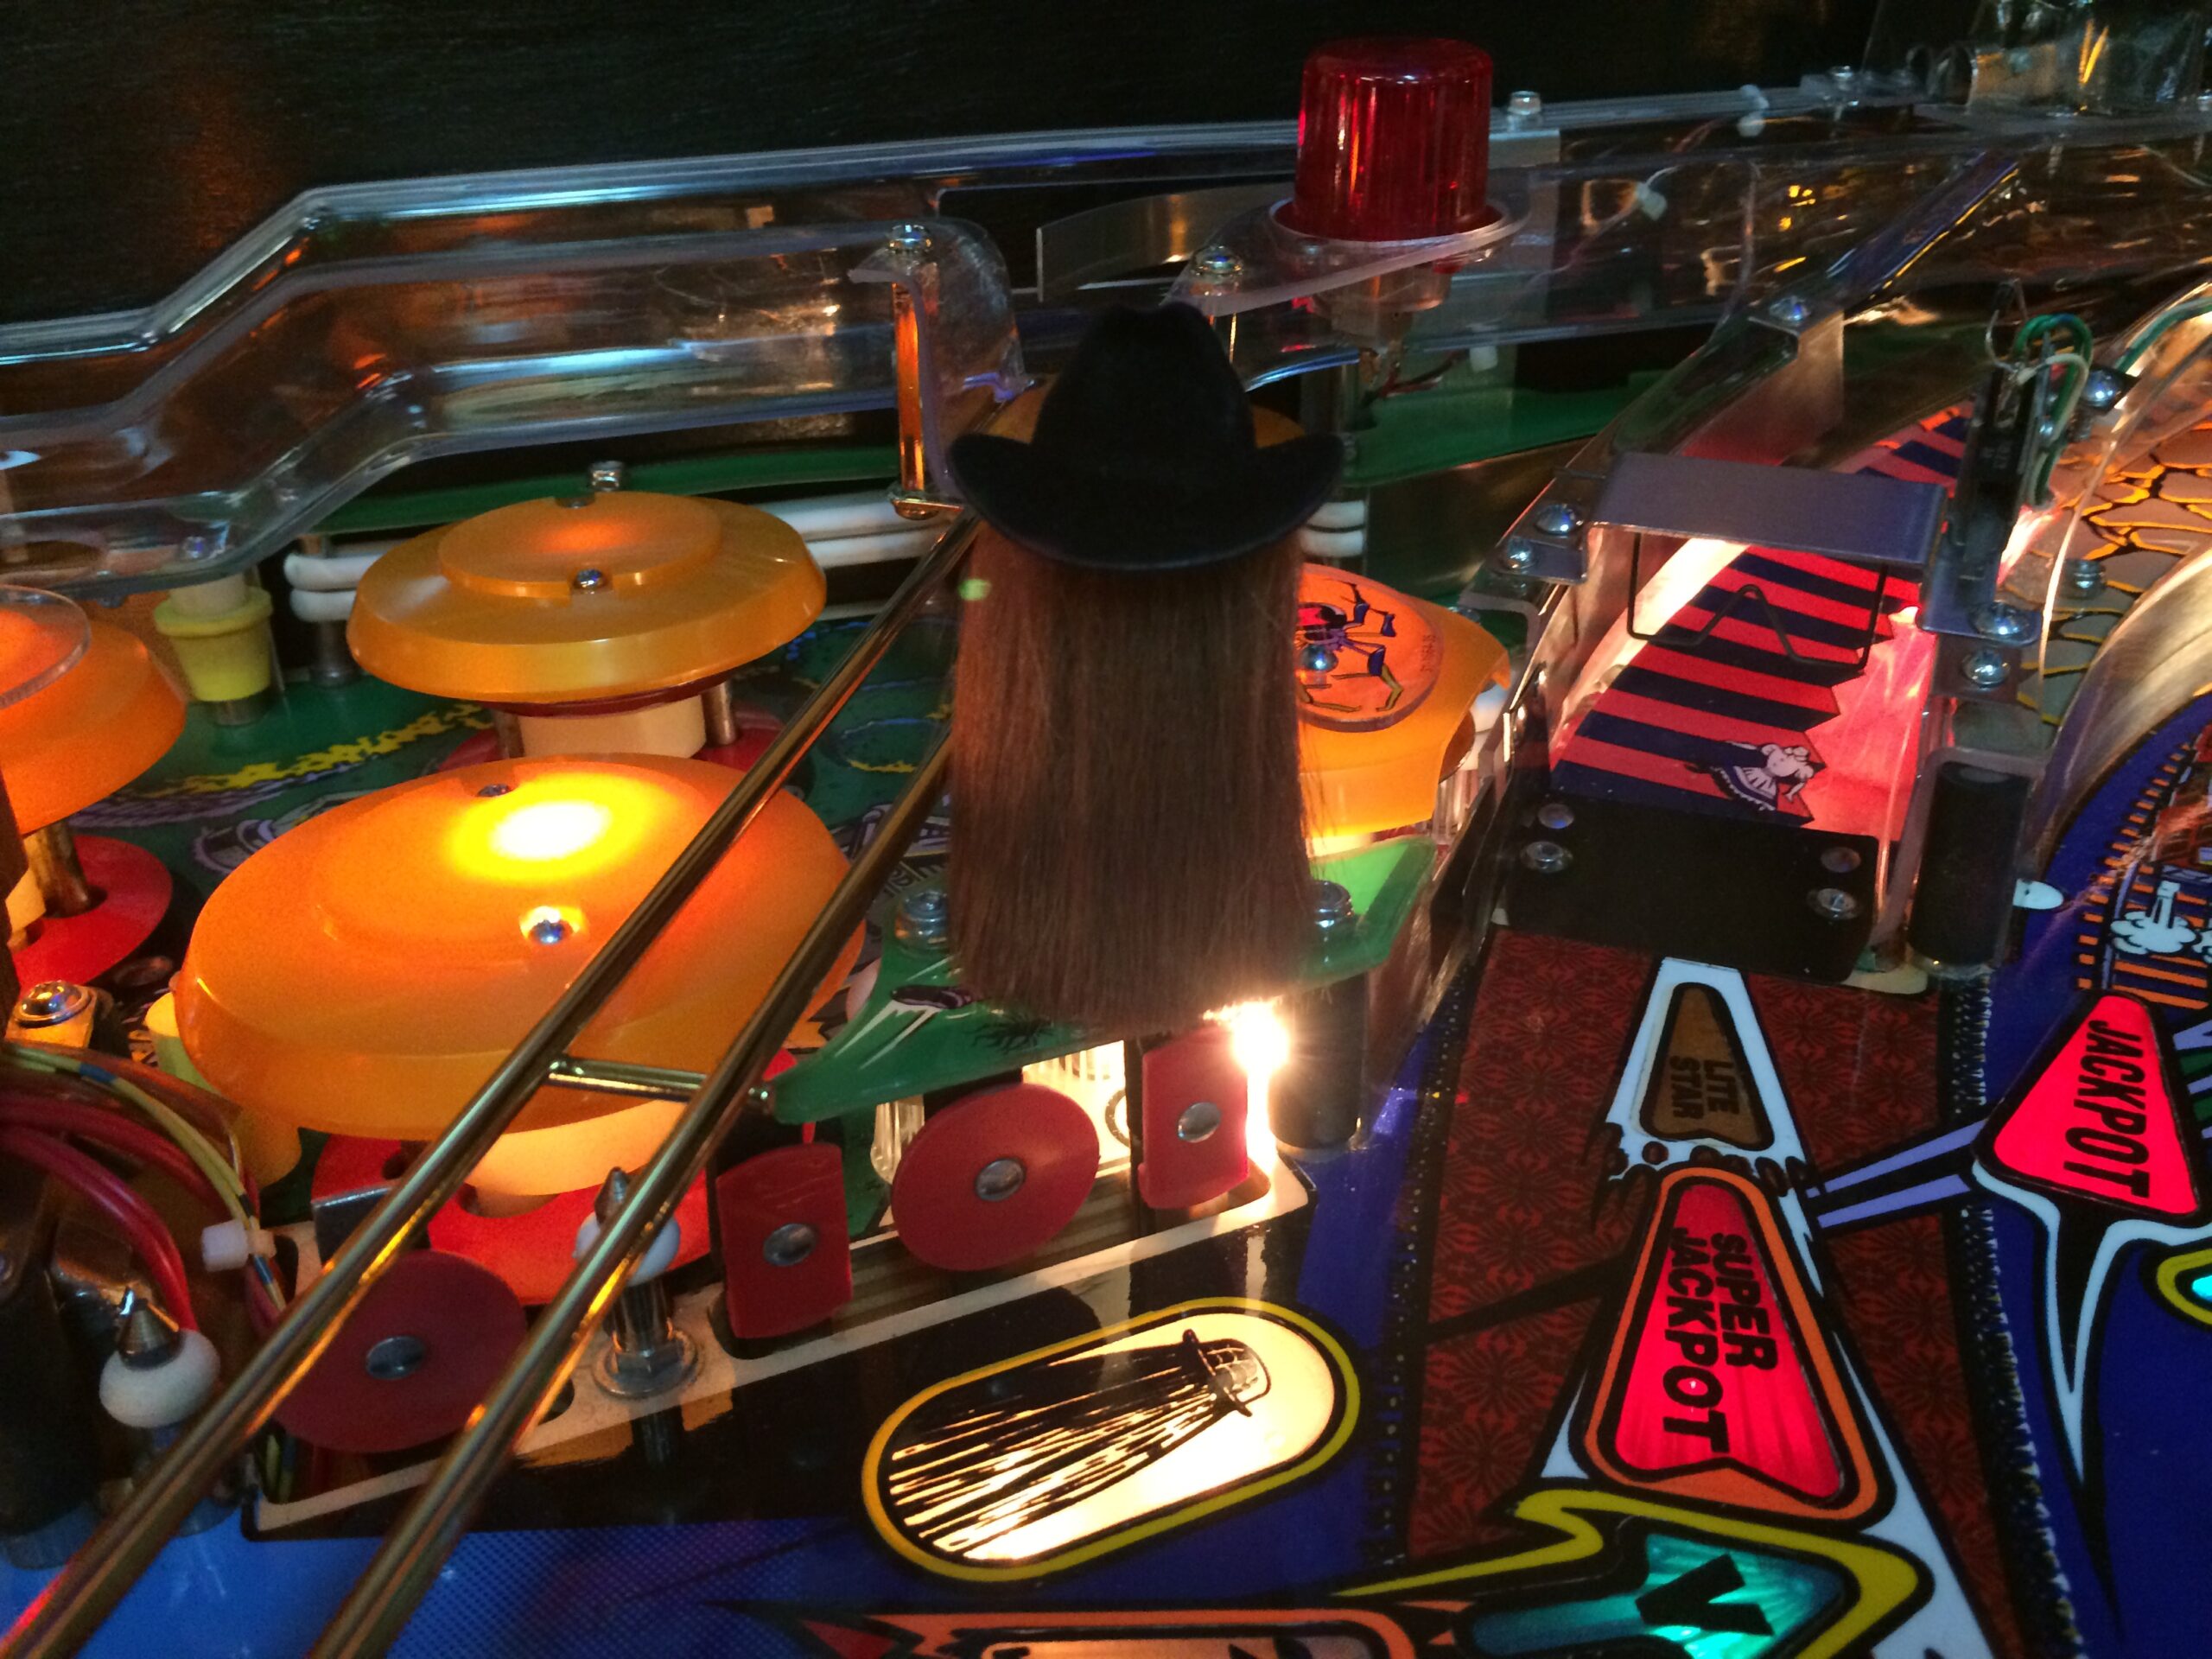 The Knight Mod Bally Williams Addams family pinball machine Mod Pinball Pro 